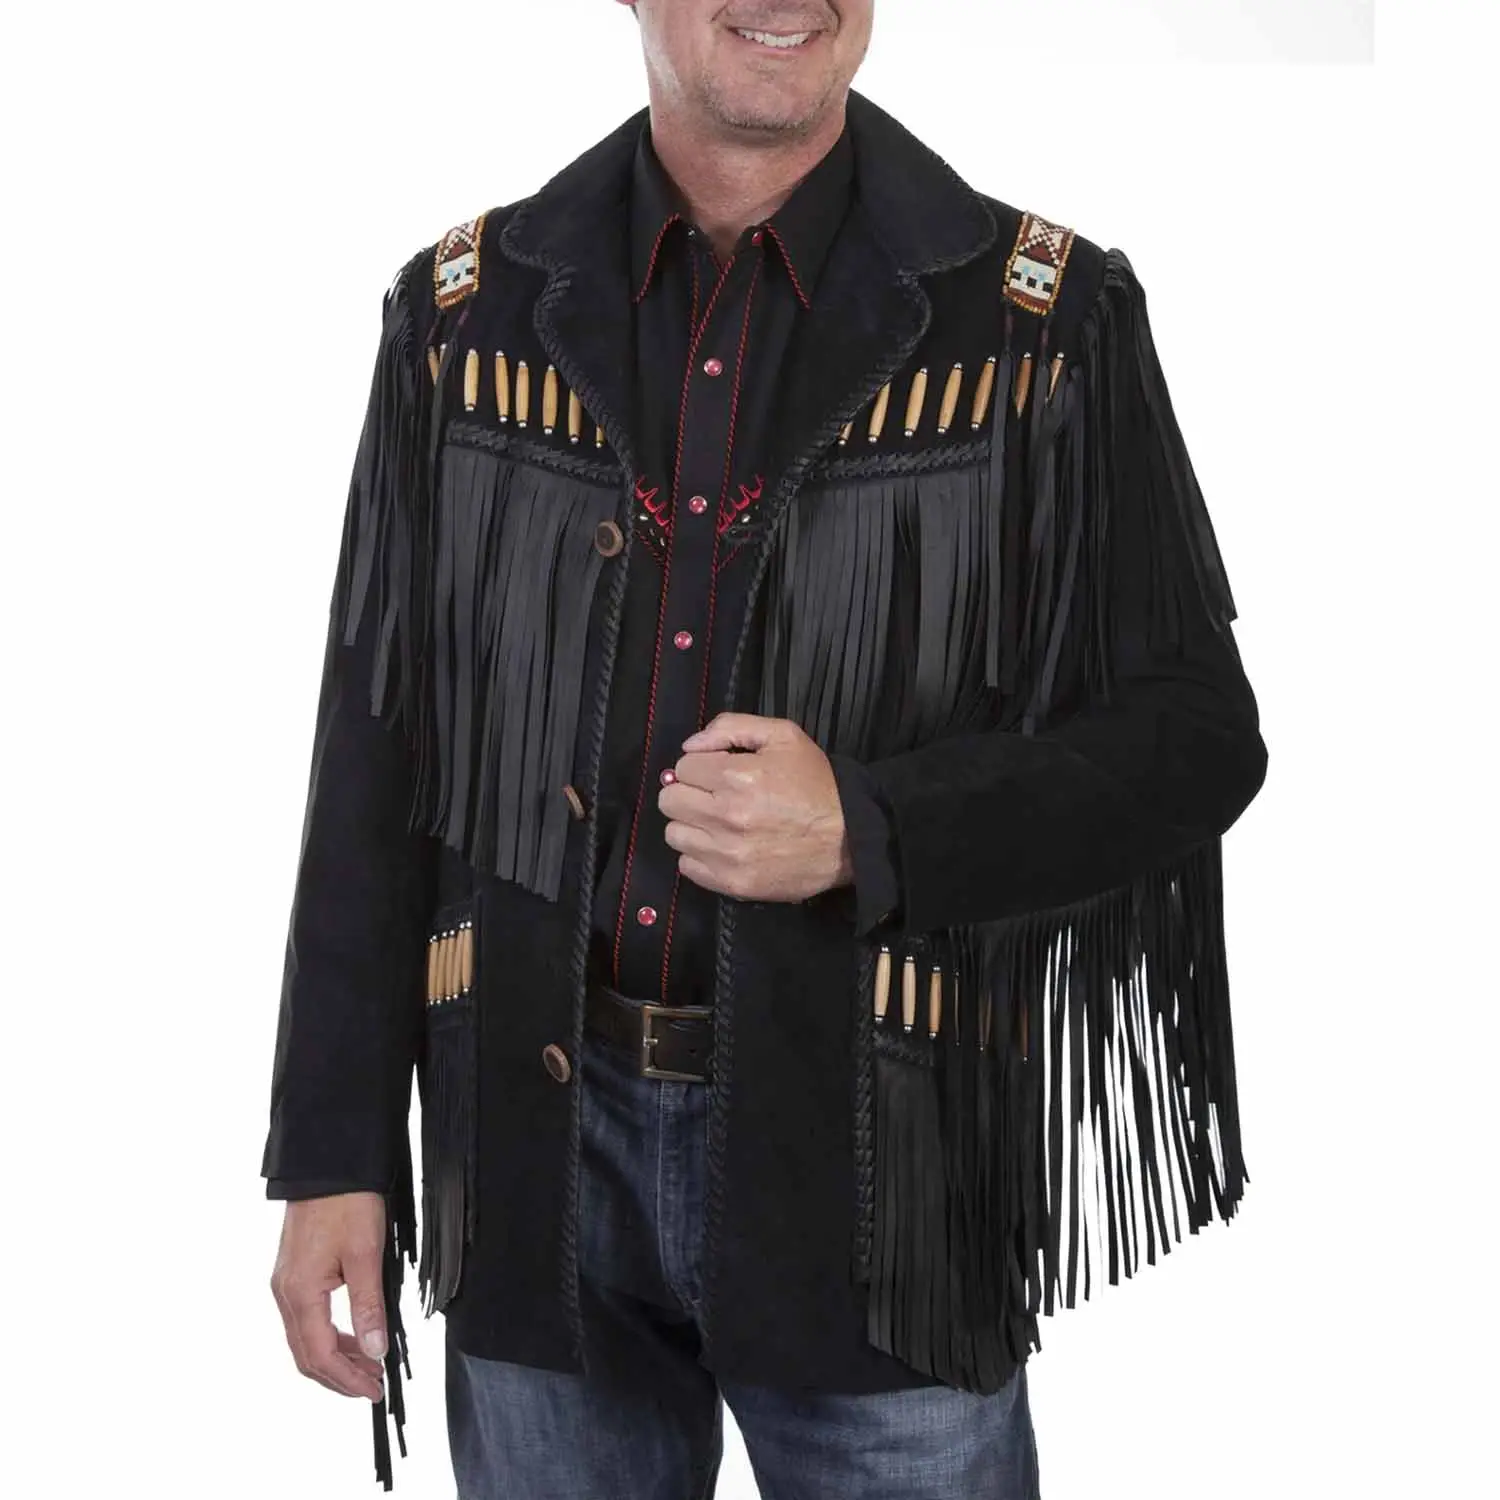 American leather jacket fringes & beads cowboy western jacket